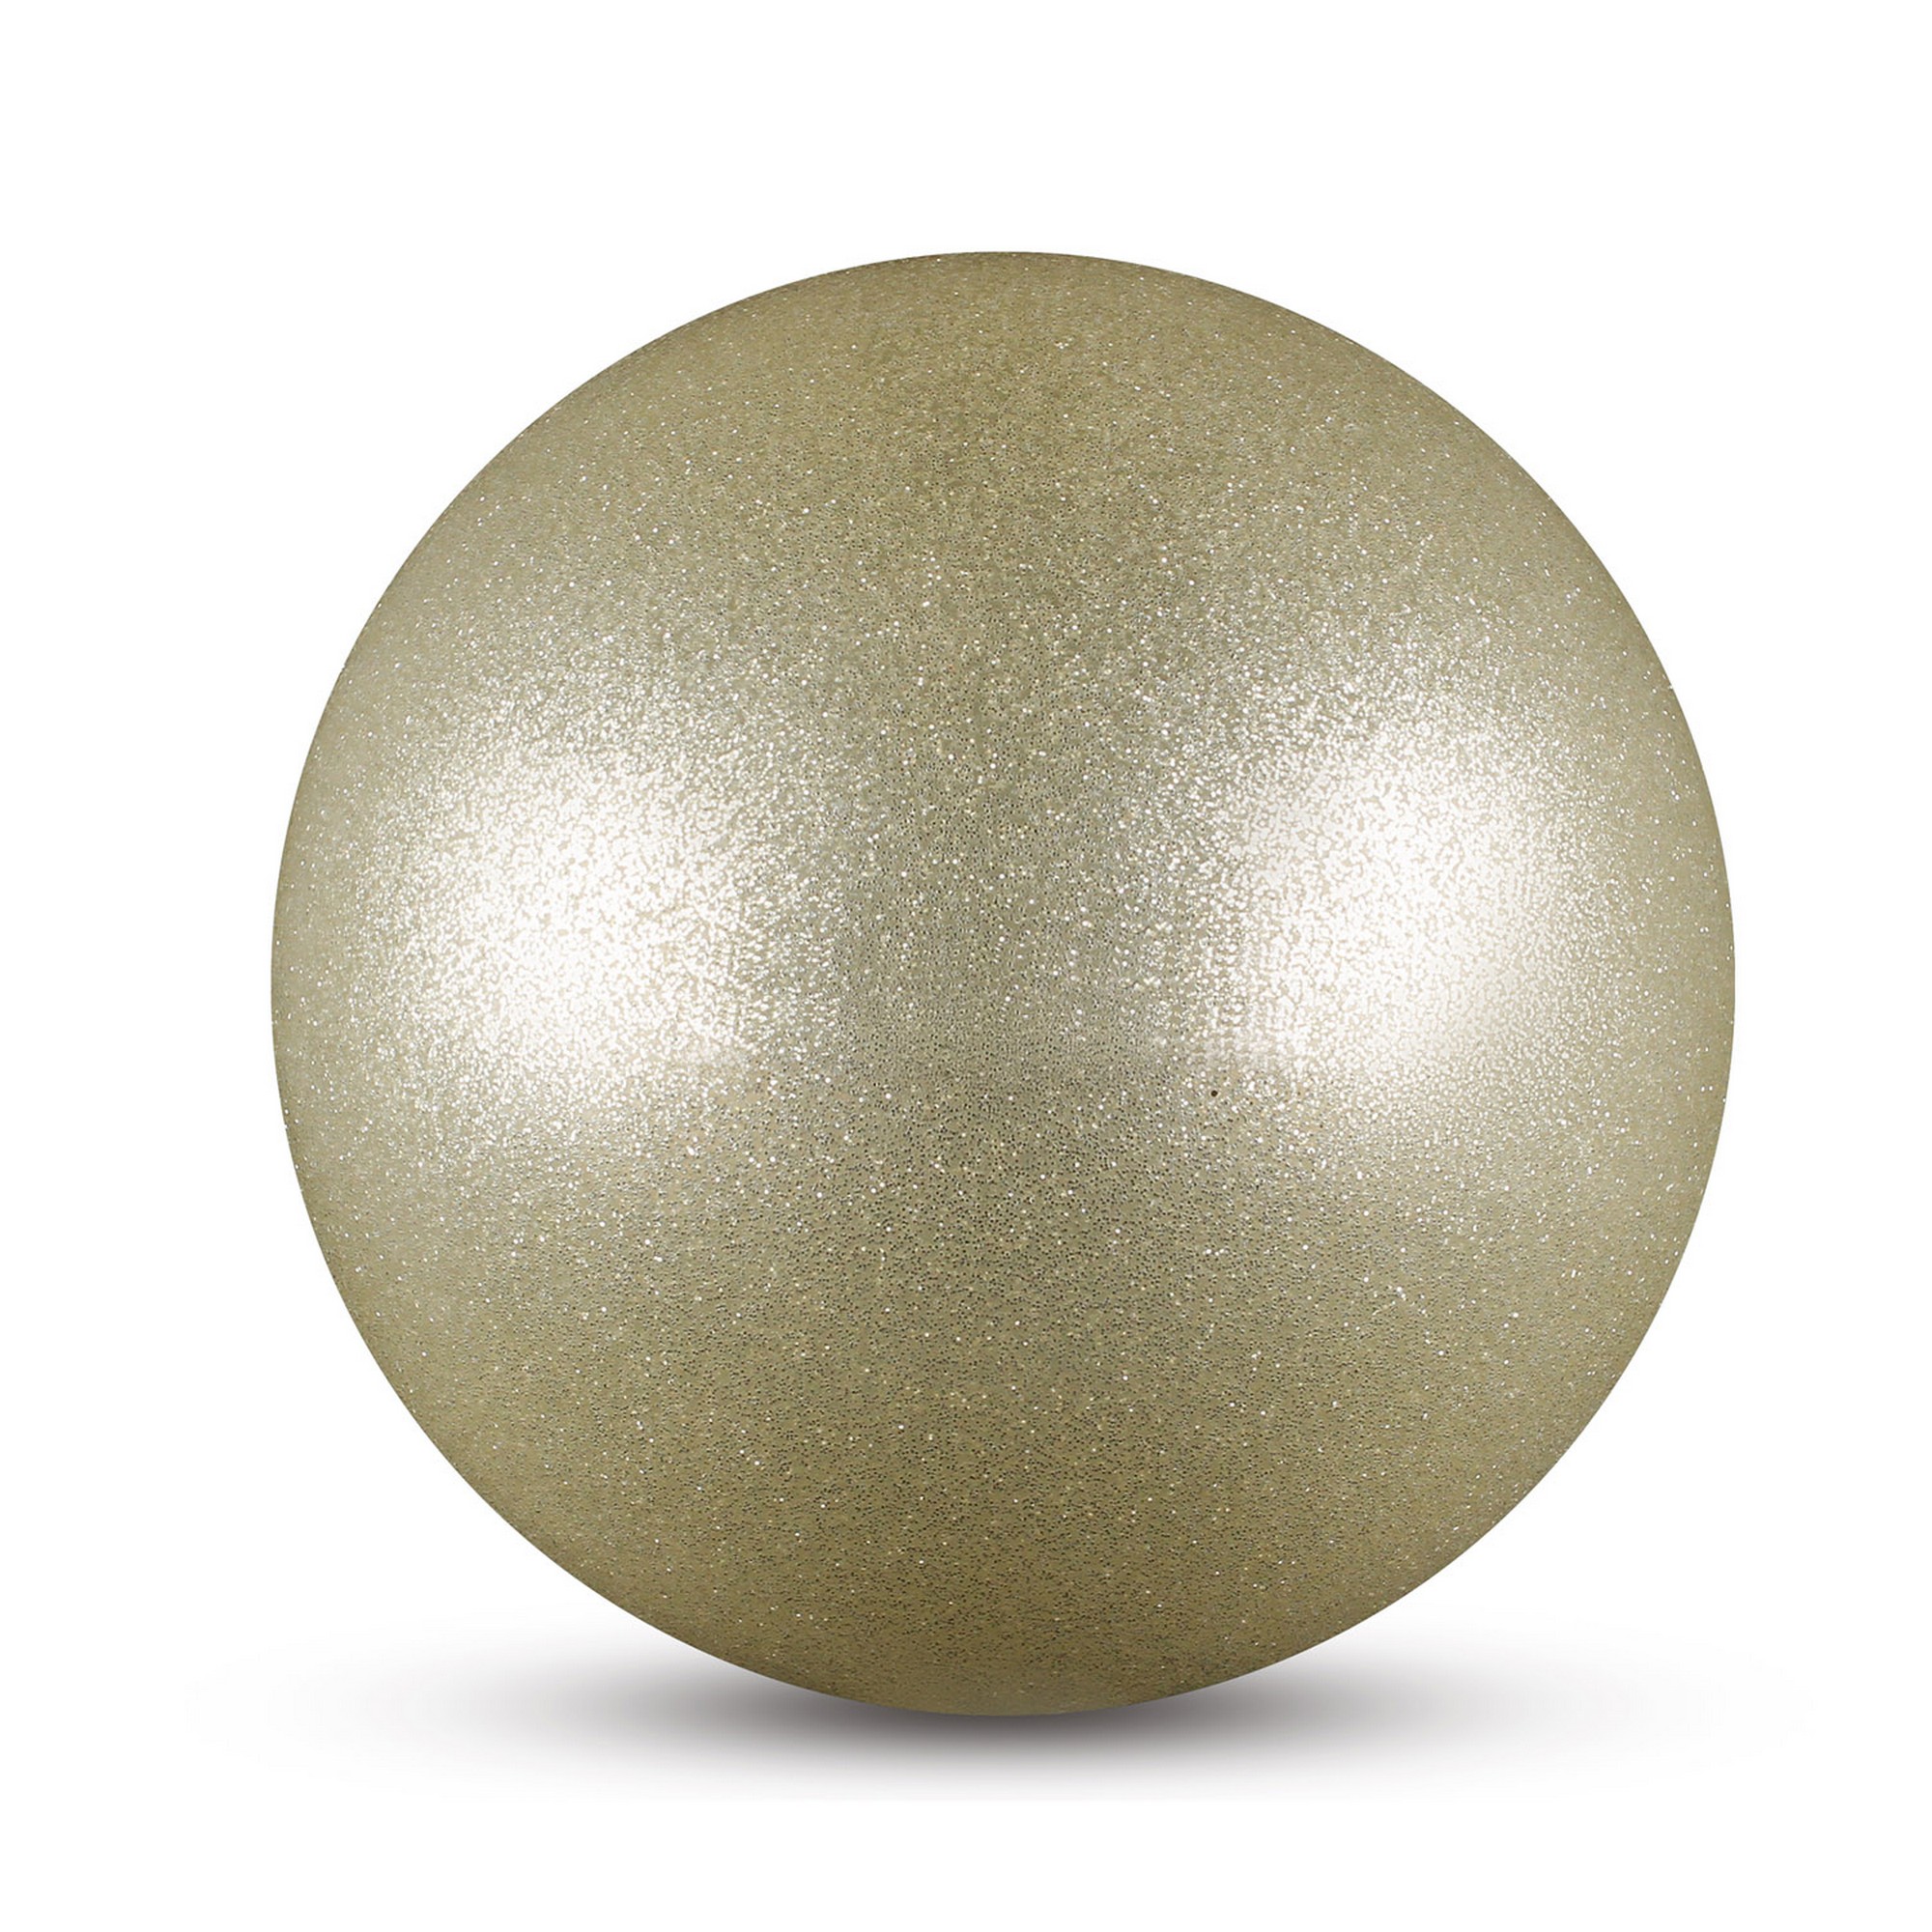 Мяч для художественной гимнастики металлик d15 см Indigo IN119 с блеcтками серебряный 2000_2000